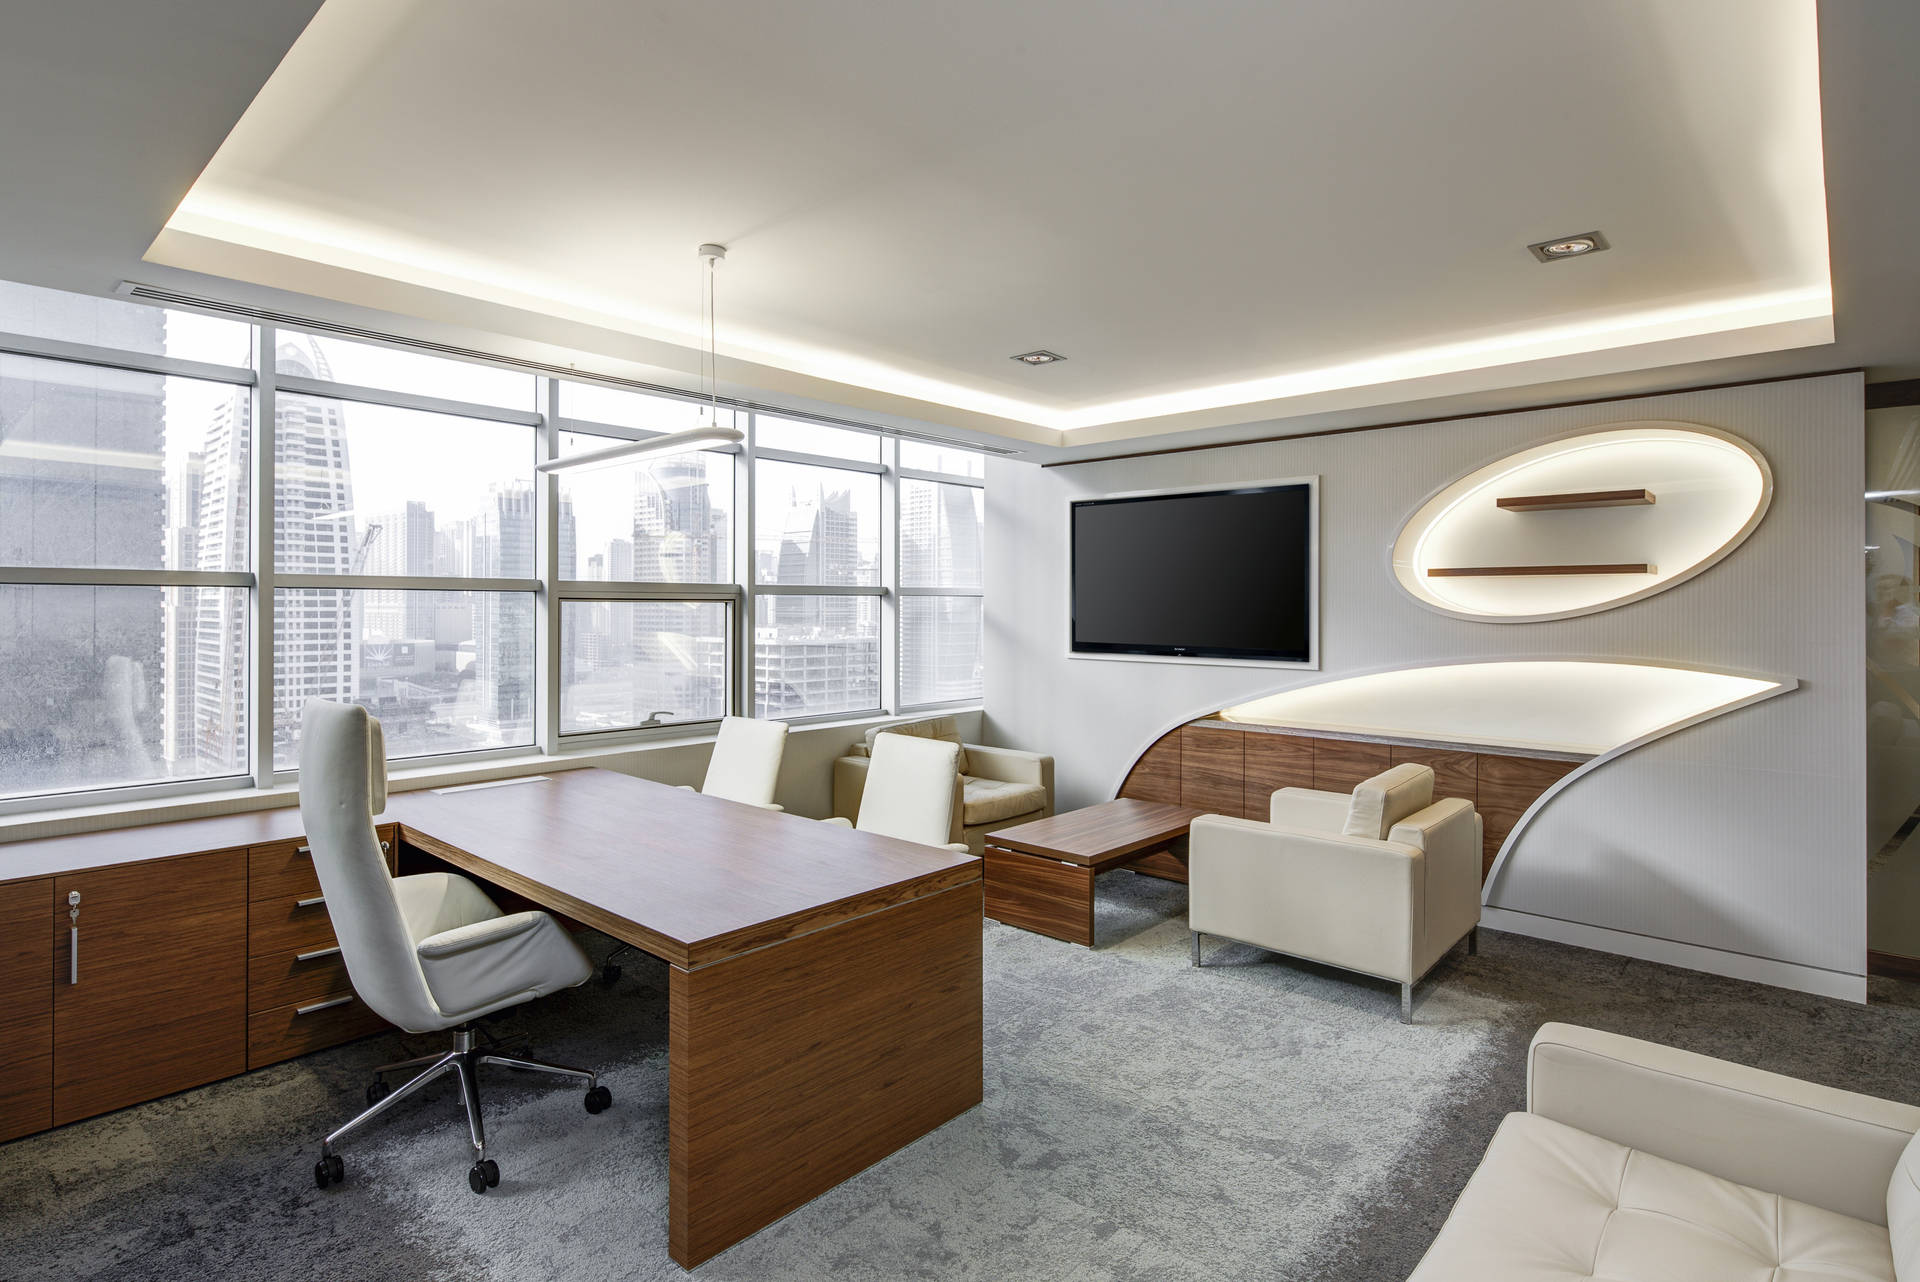 Modular Furniture Office Interior Design Picture